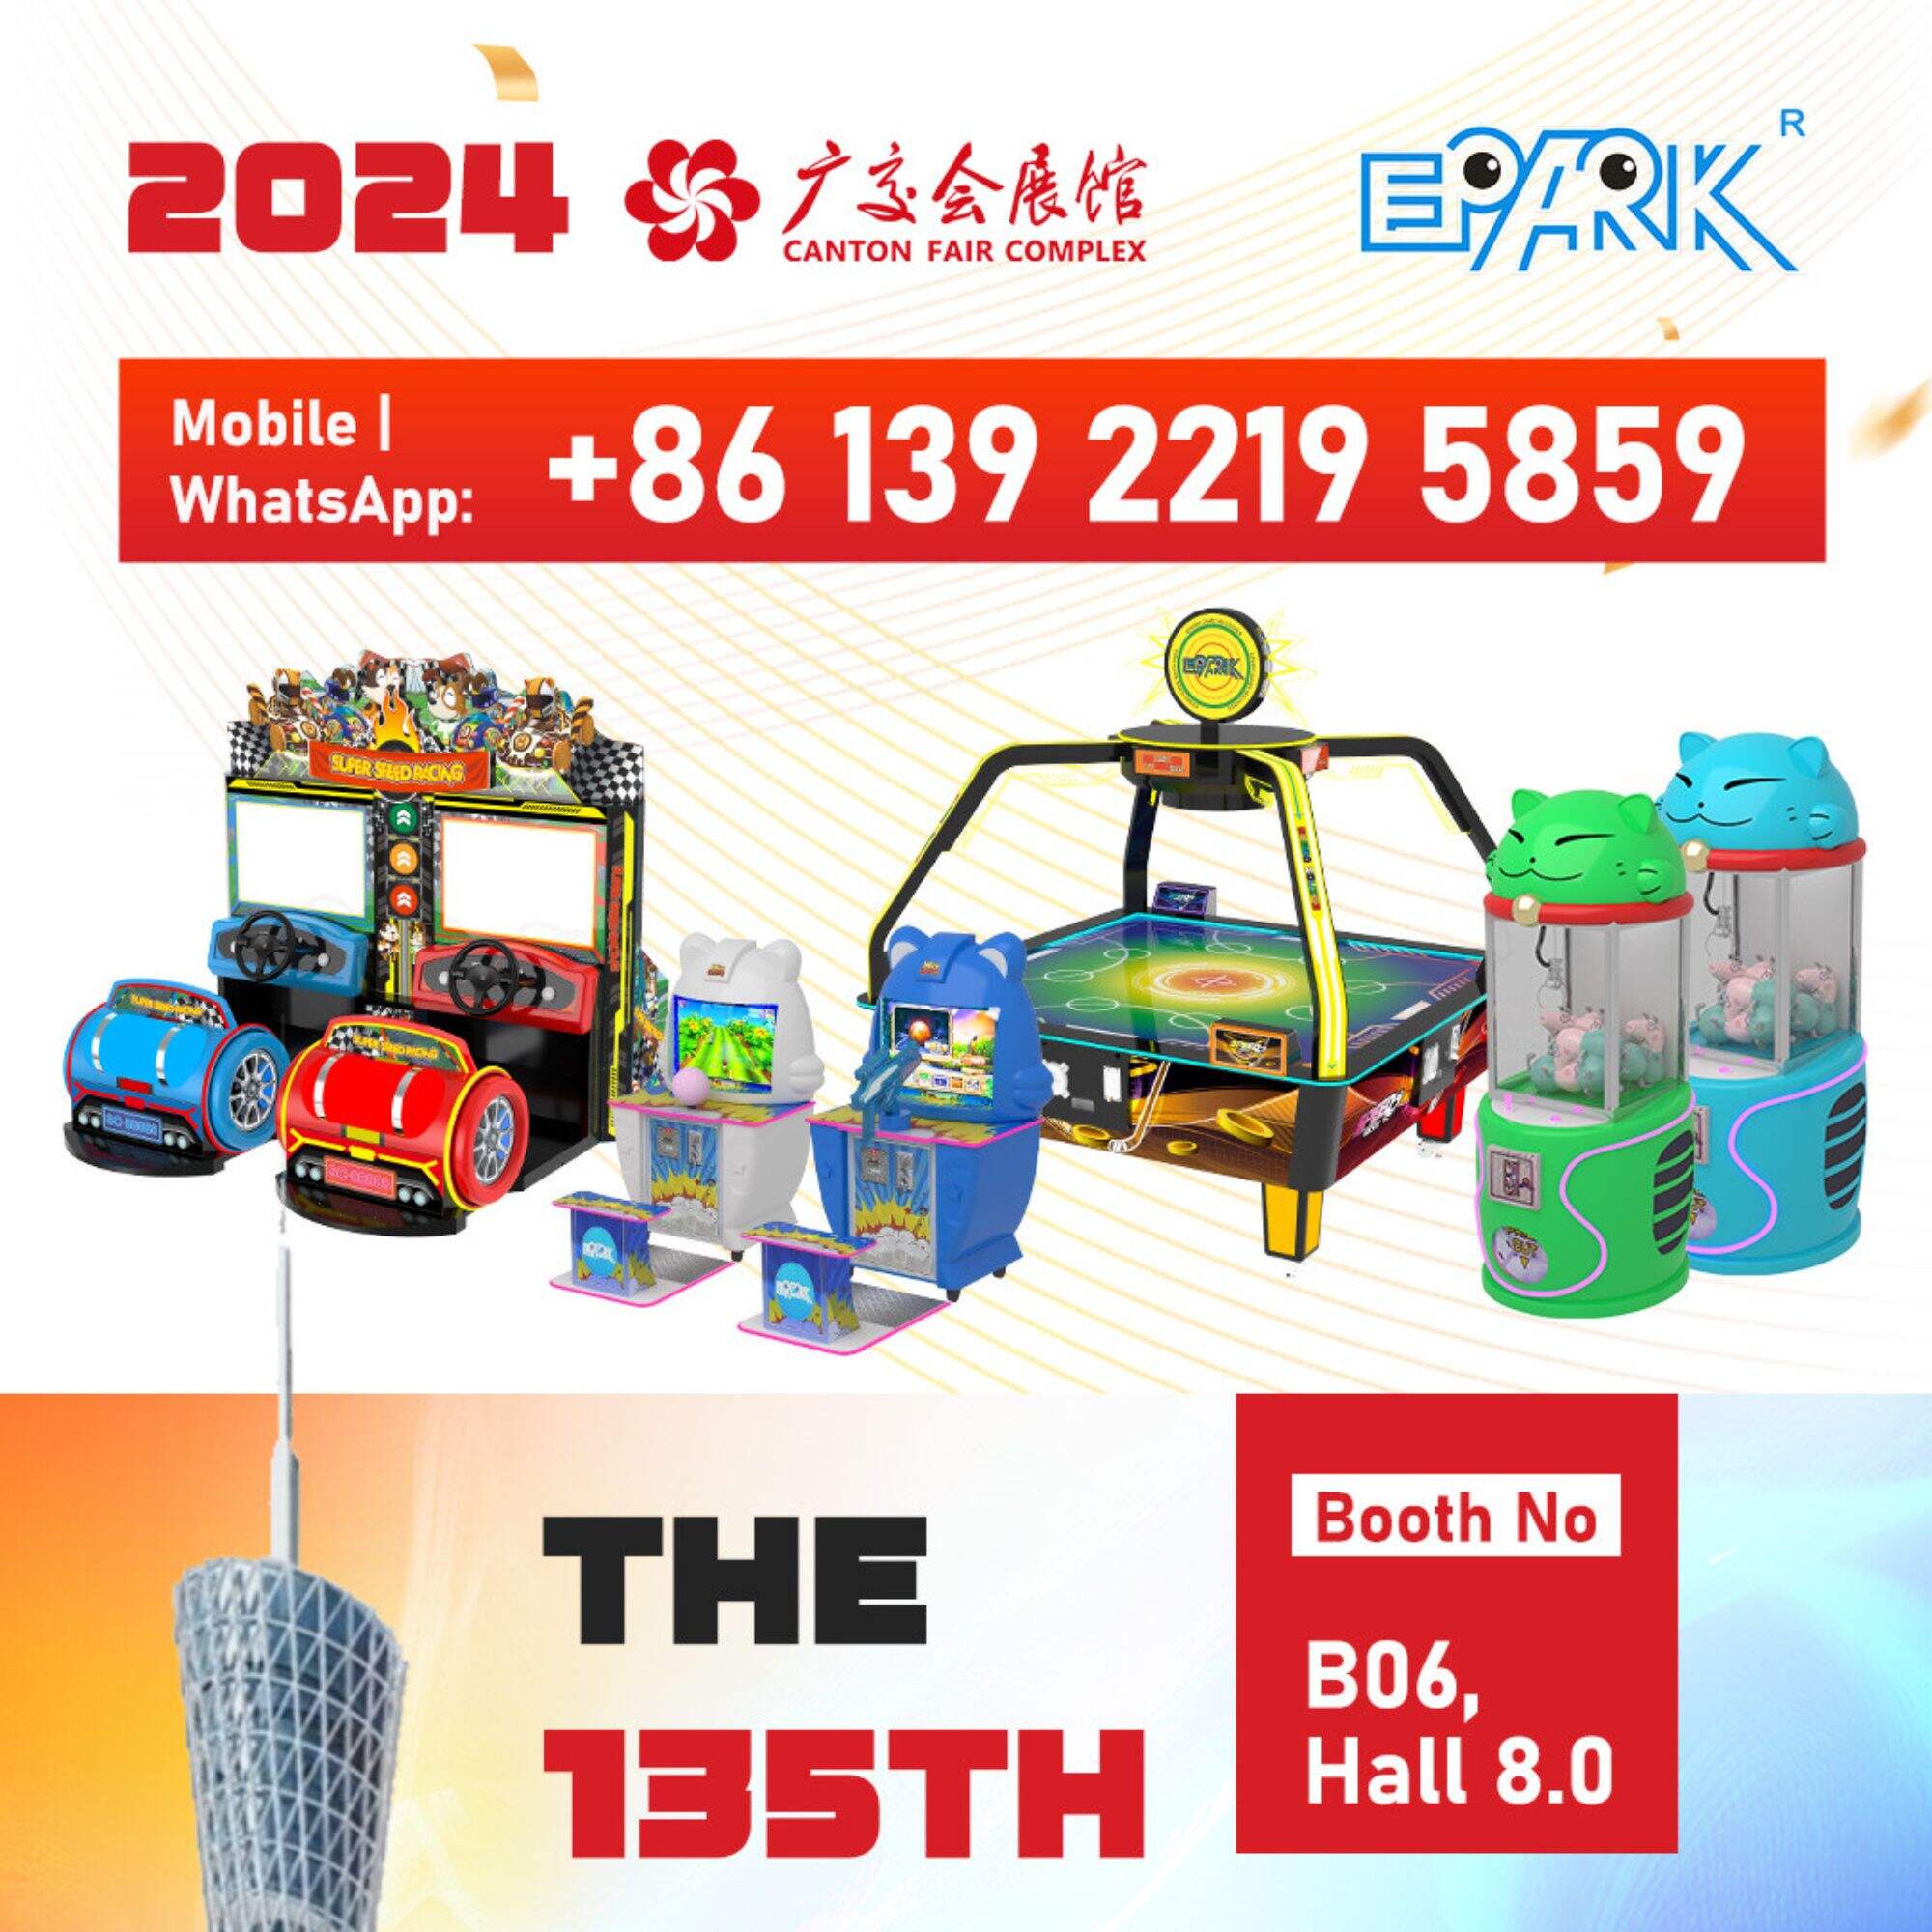 Meet EPARK in China at the Canton Fair